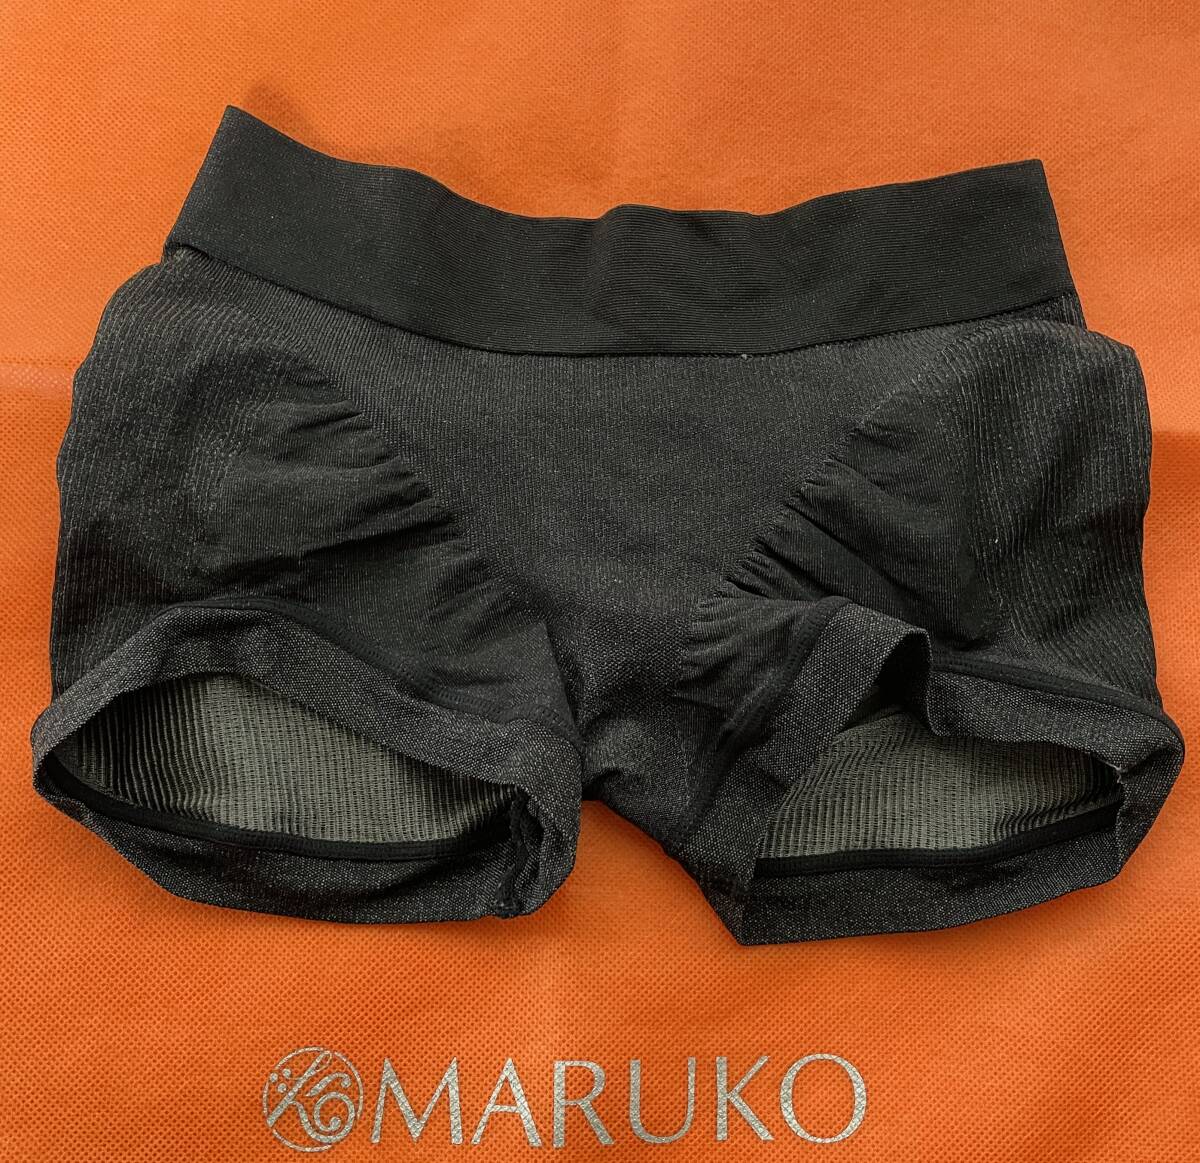 マルコ MARUKO ショーツ ソフトガードル Sサイズ 黒 補正下着 ホームクリーニング済みの画像1